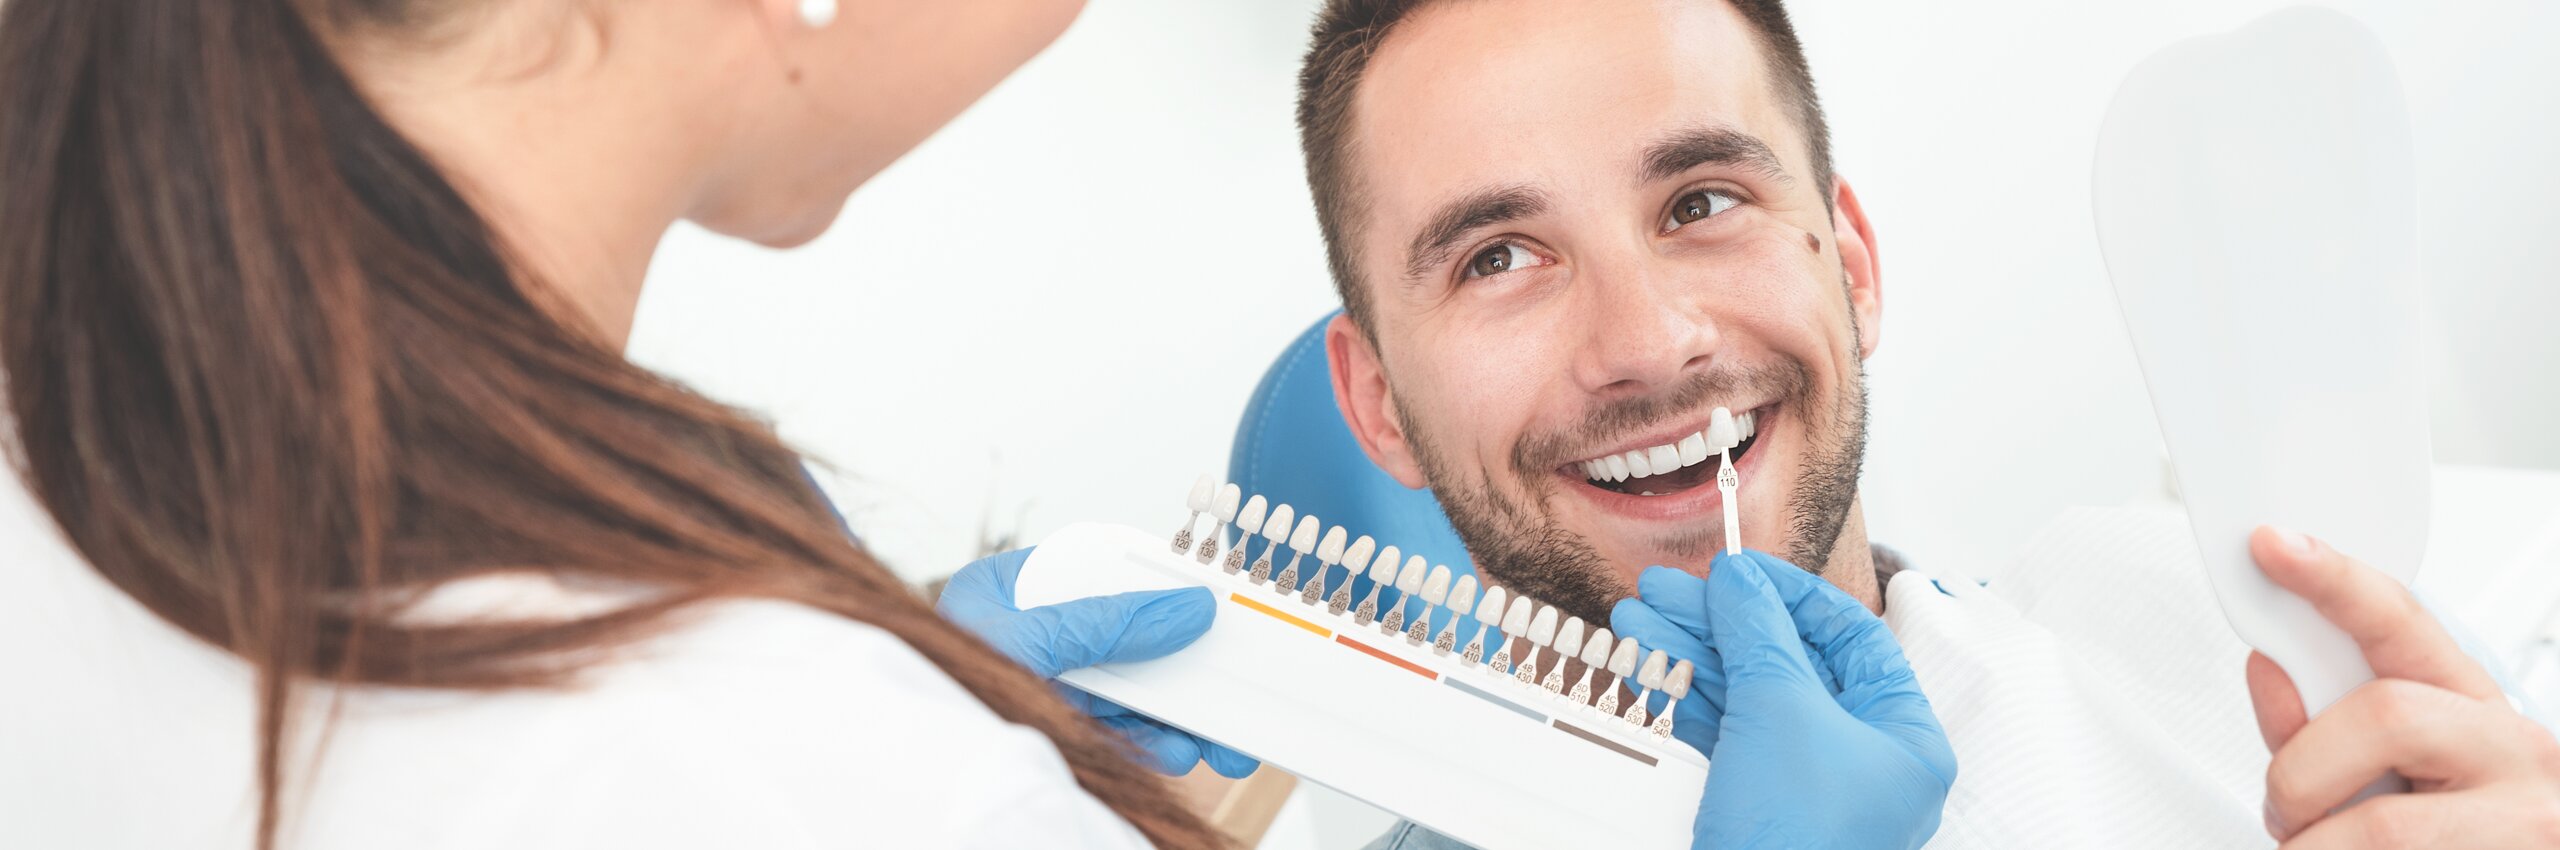 Zahnerhaltung und schöne Zähne dank volldigitaler Zahnmedizin